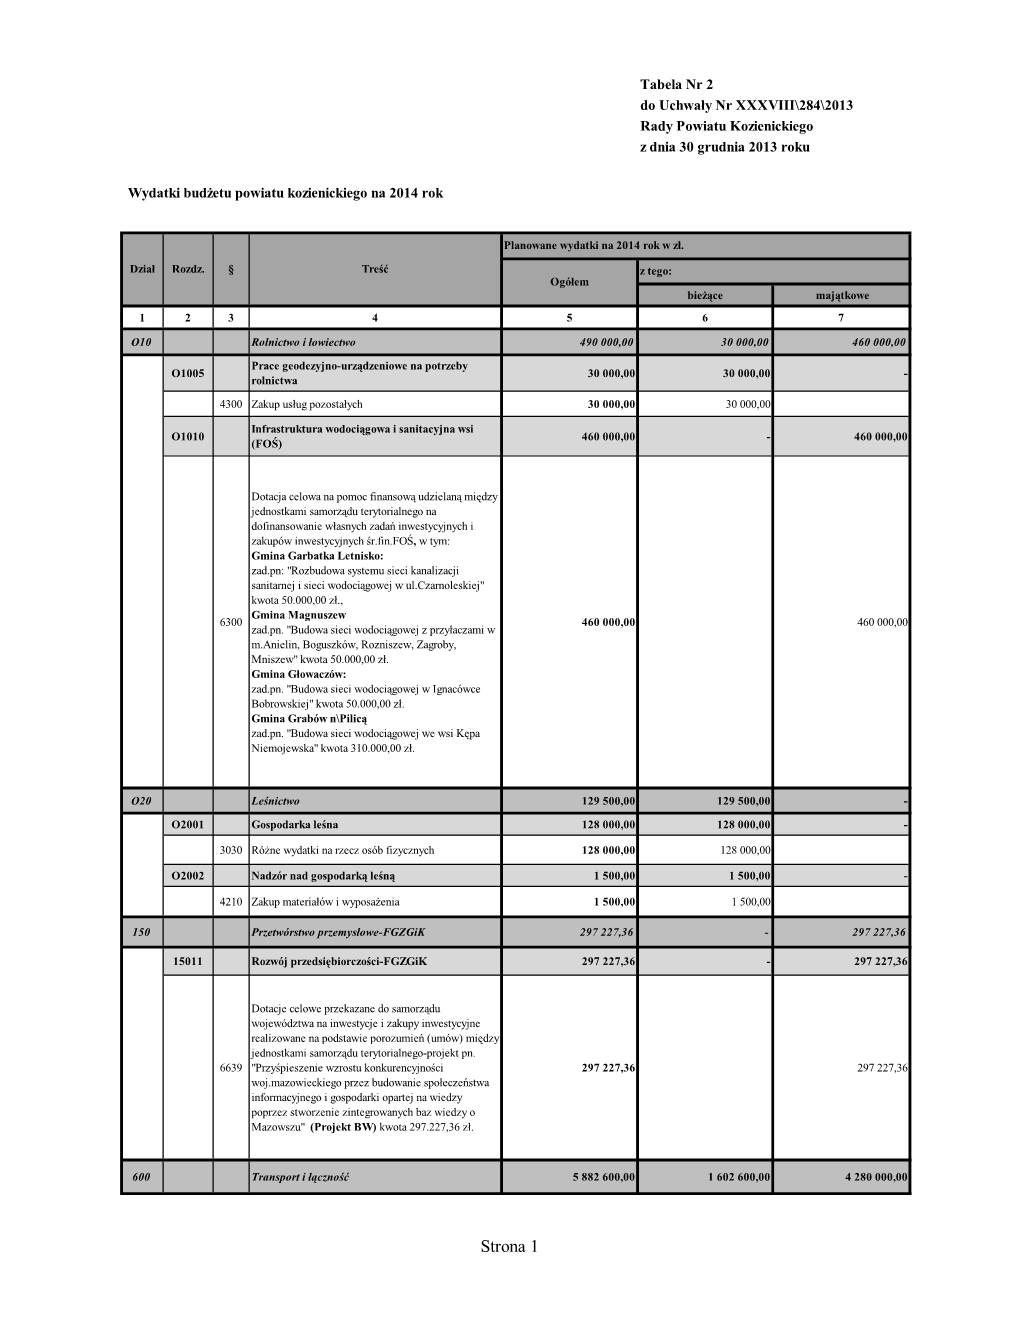 2A. Tabele I Załączniki Do Uchwały Budżetowej Na 2014